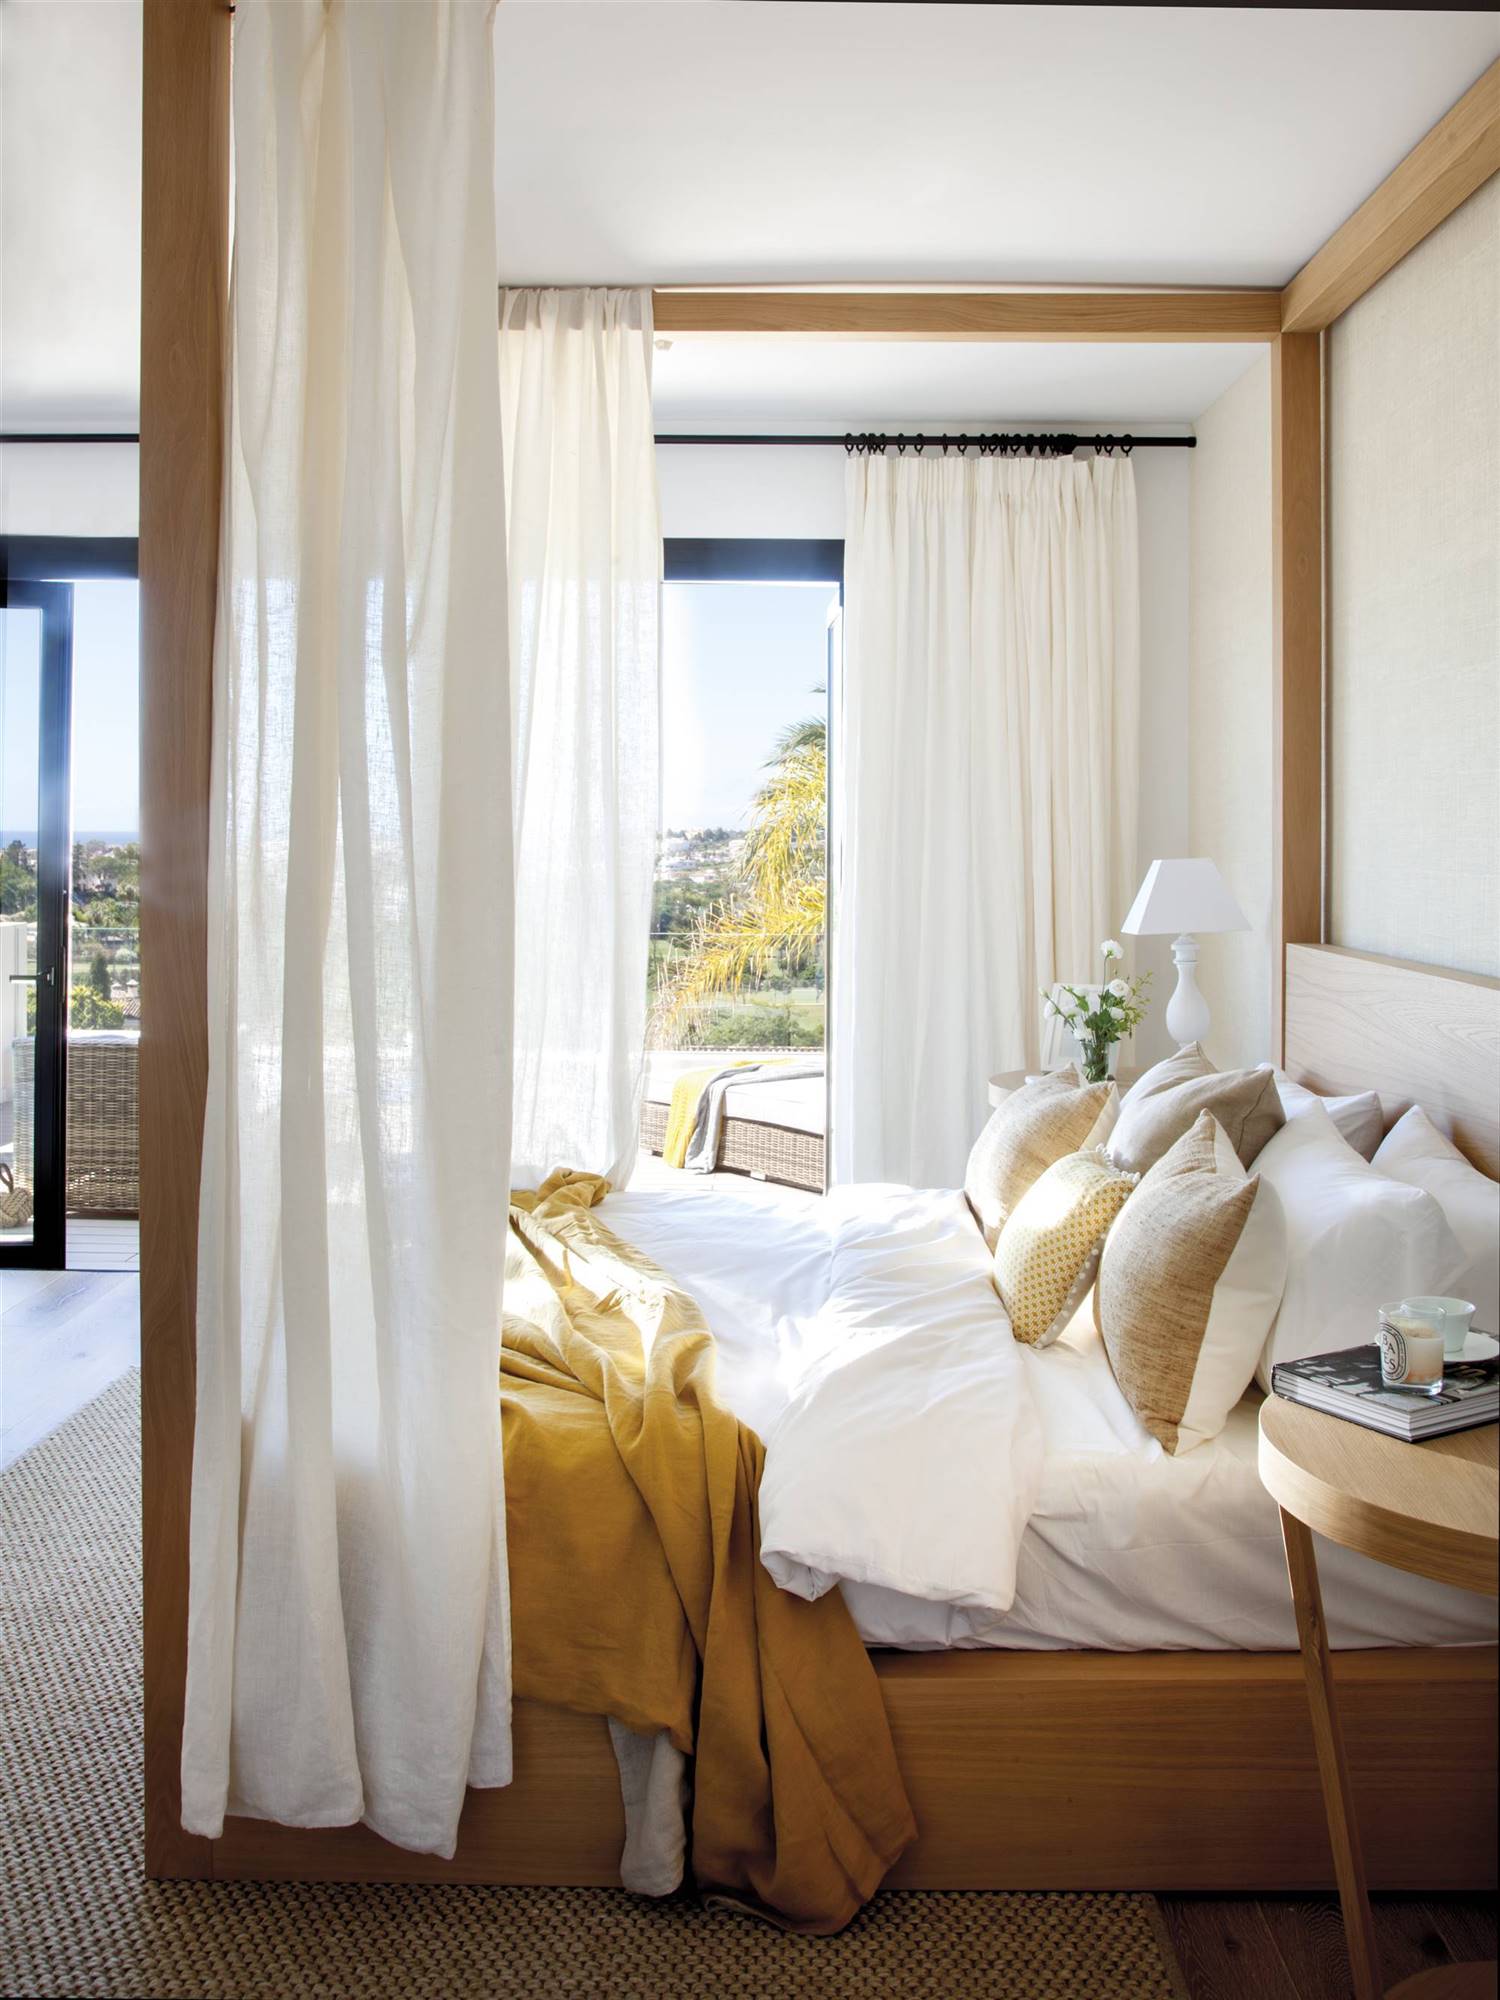 Dormitorio veraniego con largas cortinas en tonos blancos que consiguen crear un espacio muy armónico.